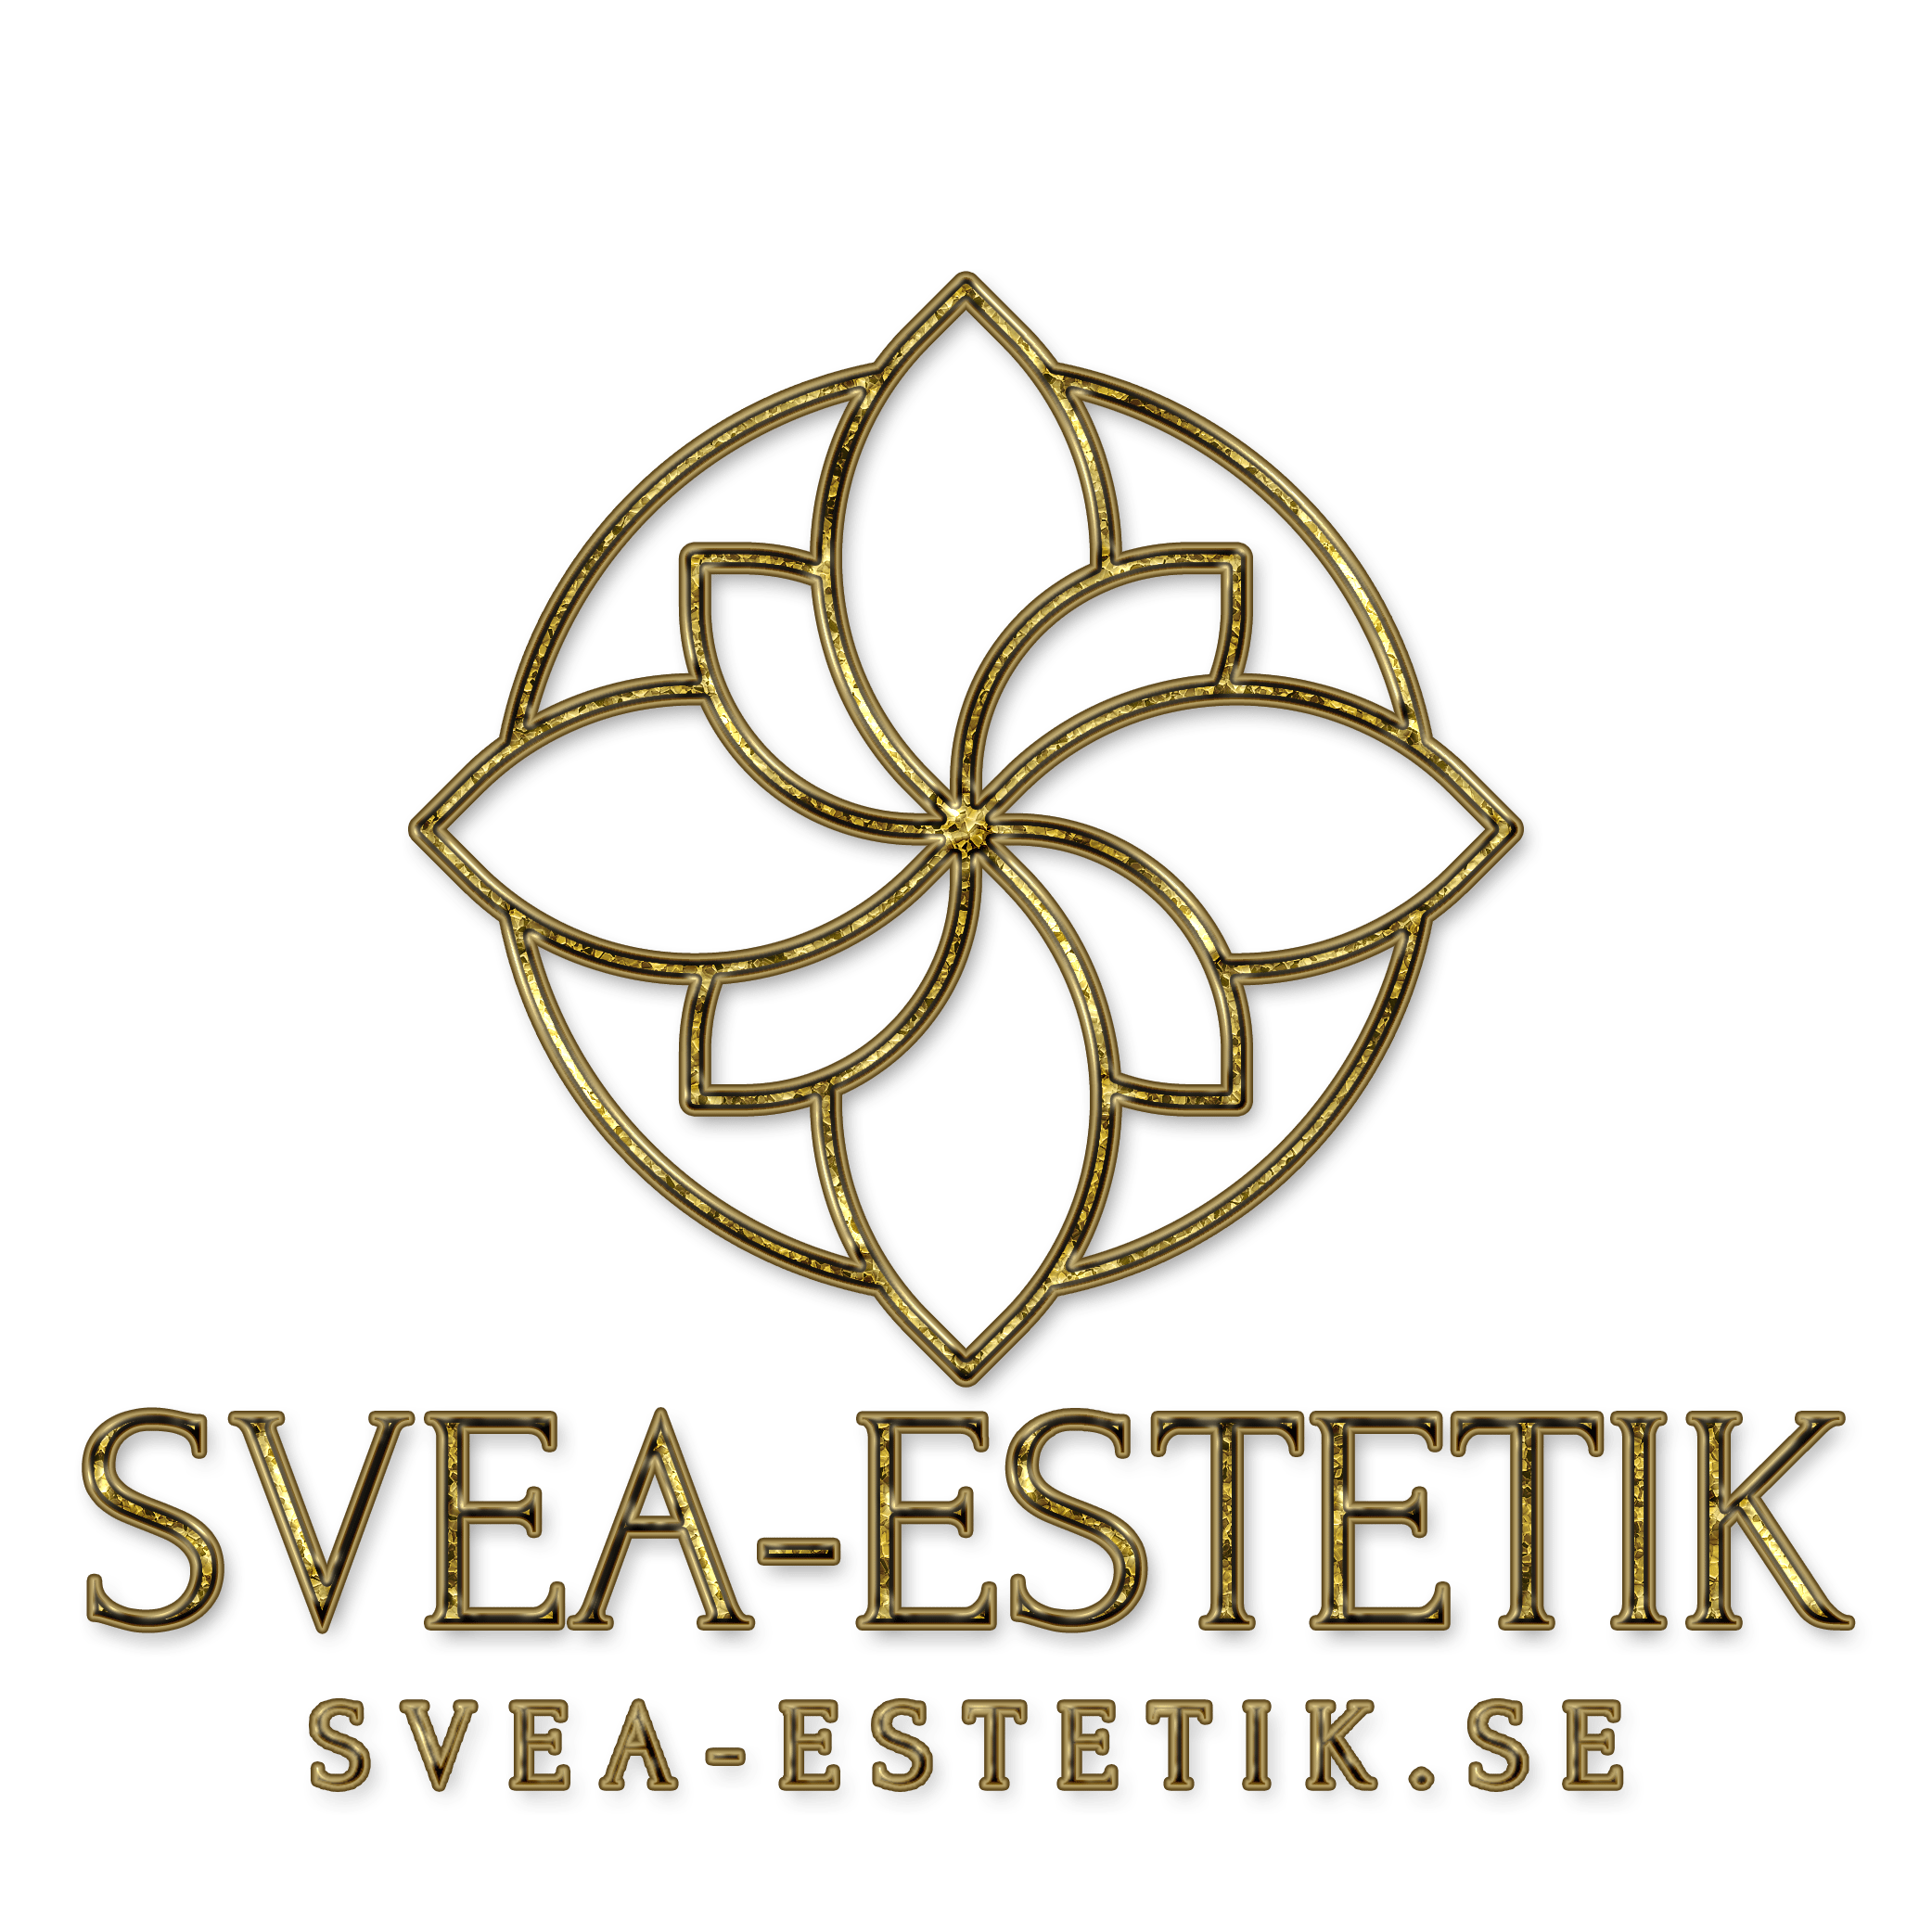 SVEA-ESTETIK